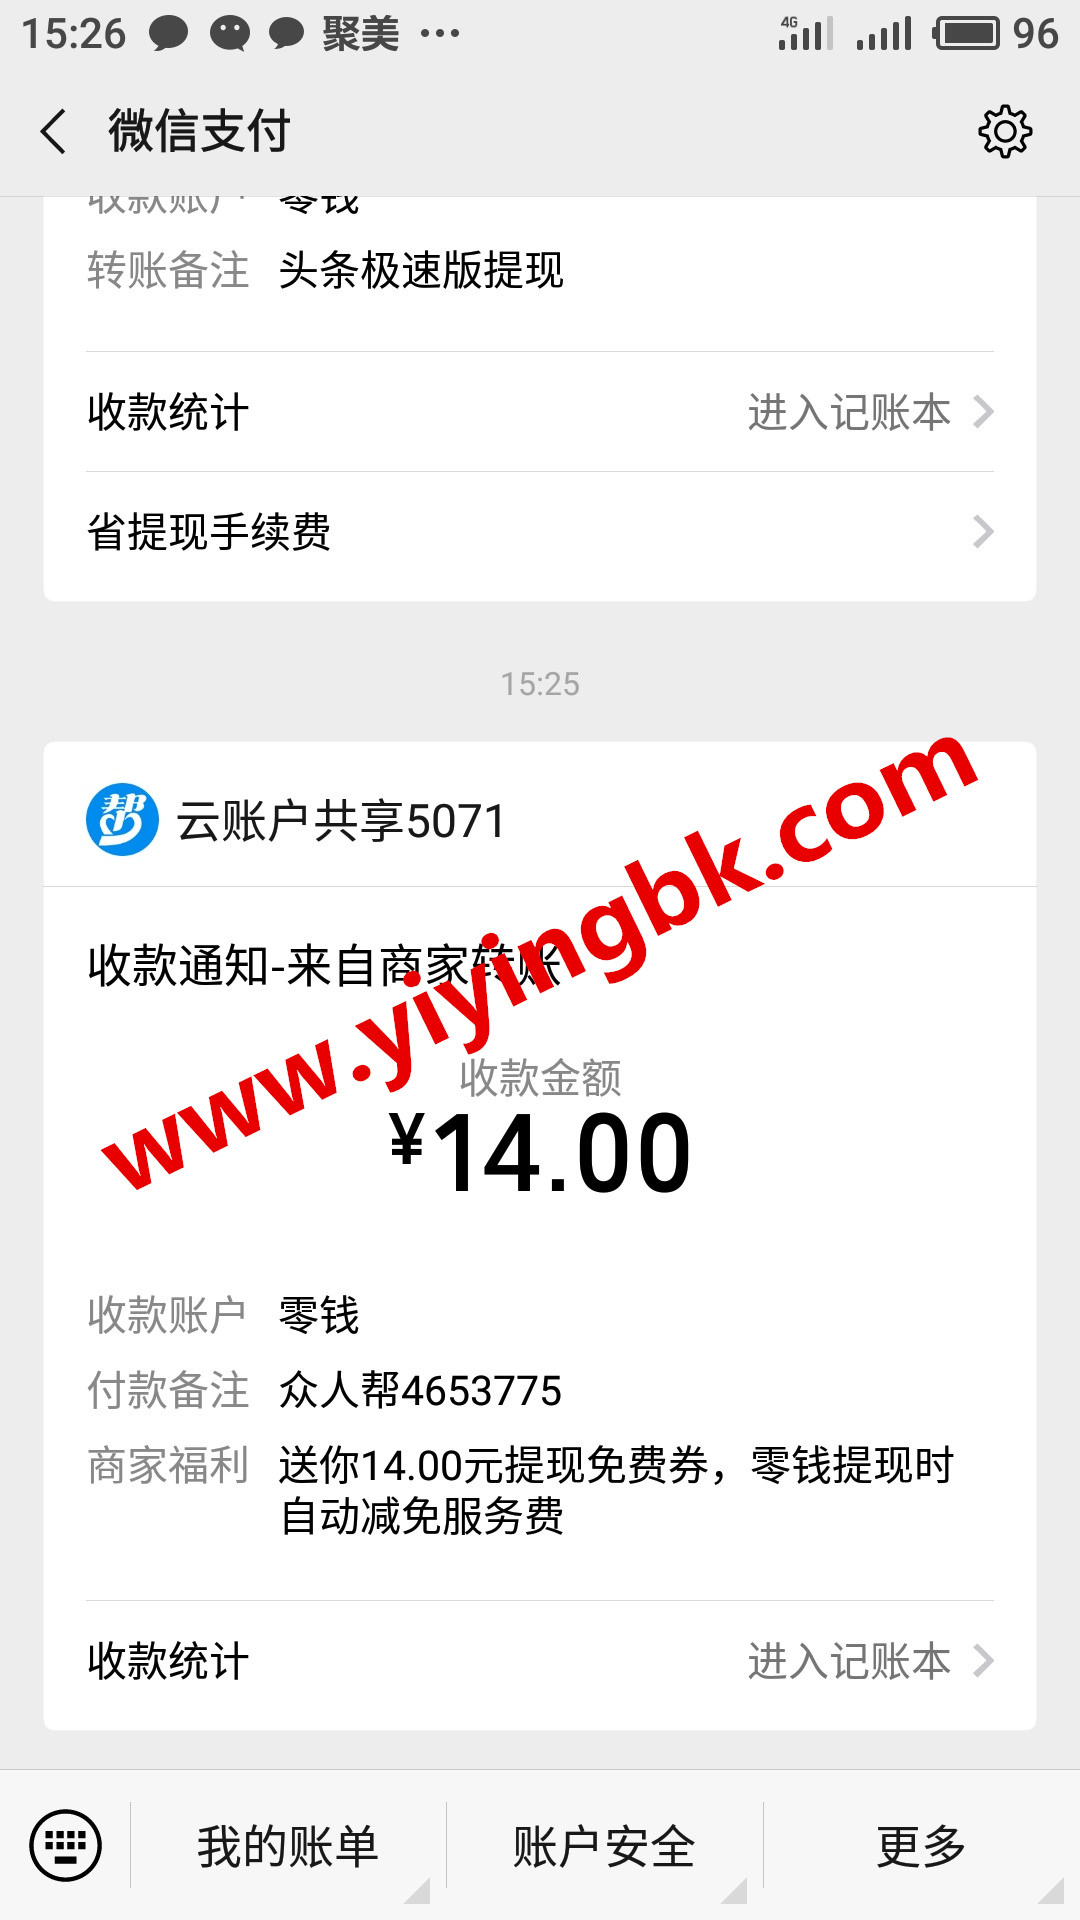 众人帮赚钱APP，微信提现红包支付秒到账。www.yiyingbk.com